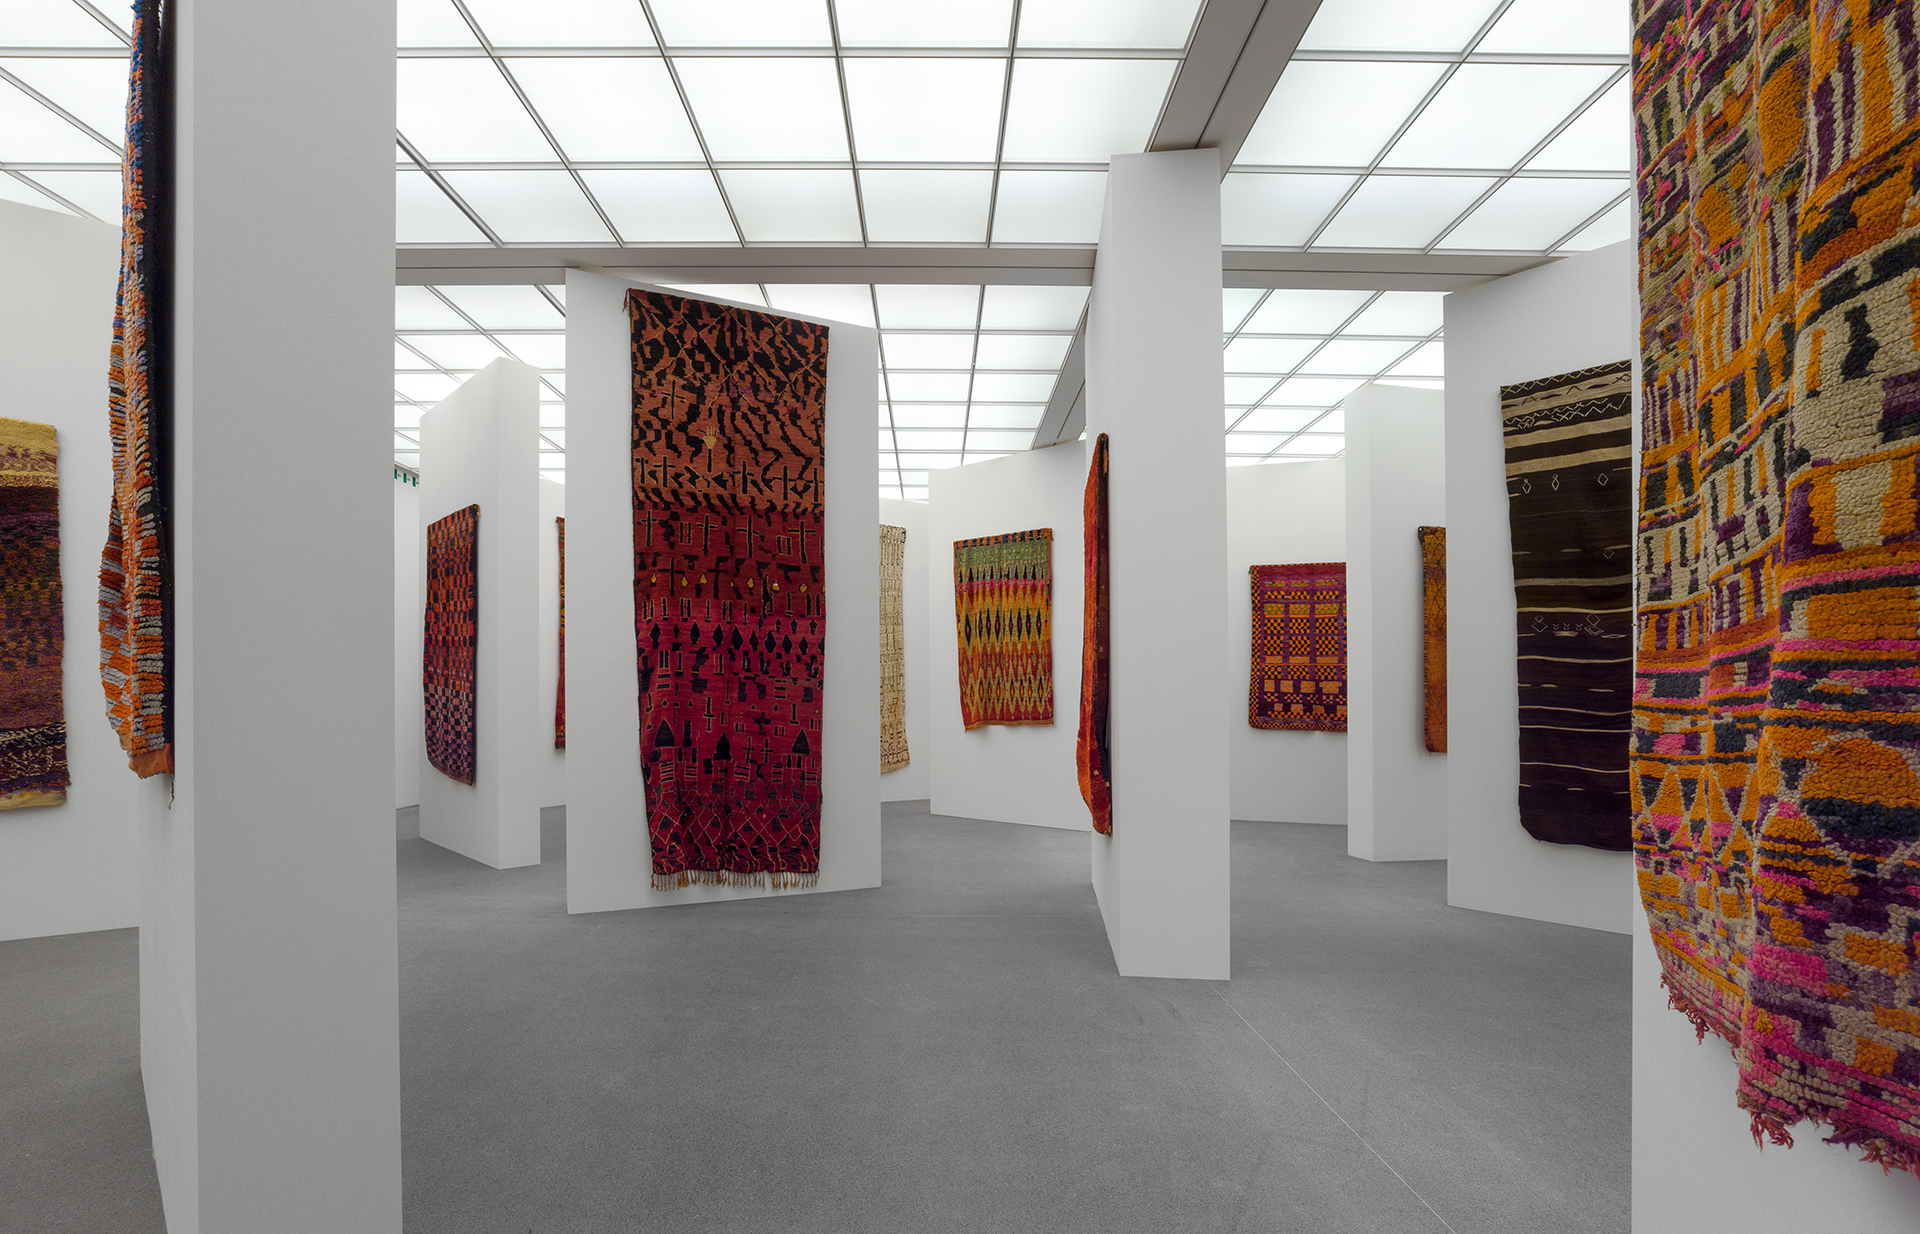 Ausstellungsraum mit verteilt aufgestellten Wänden, an denen kunstvoll gewebte Teppiche hängen.